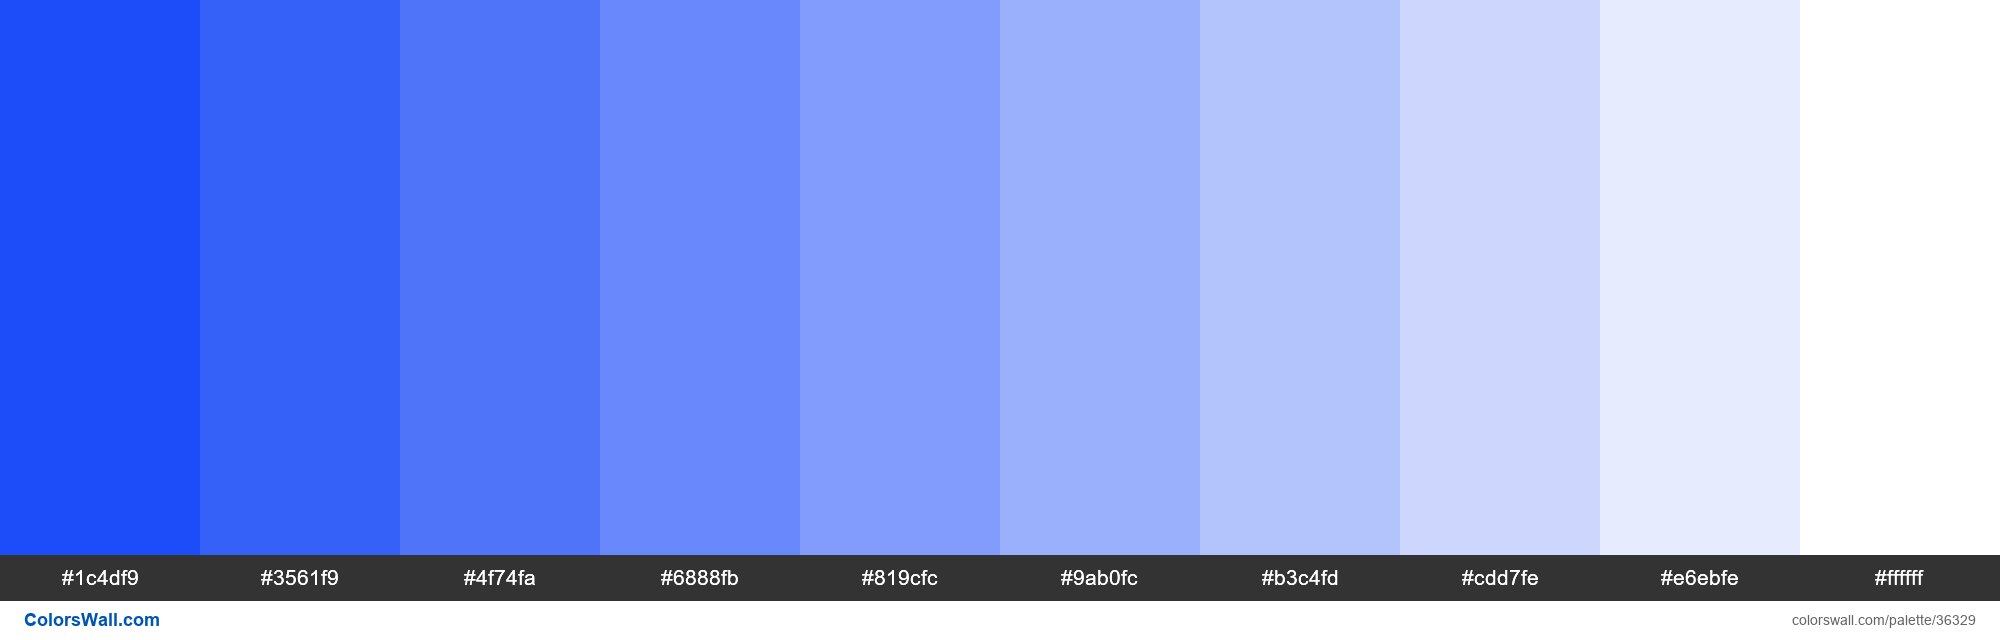 Tints XKCD Color vibrant blue #0339f8 hex colors palette - ColorsWall